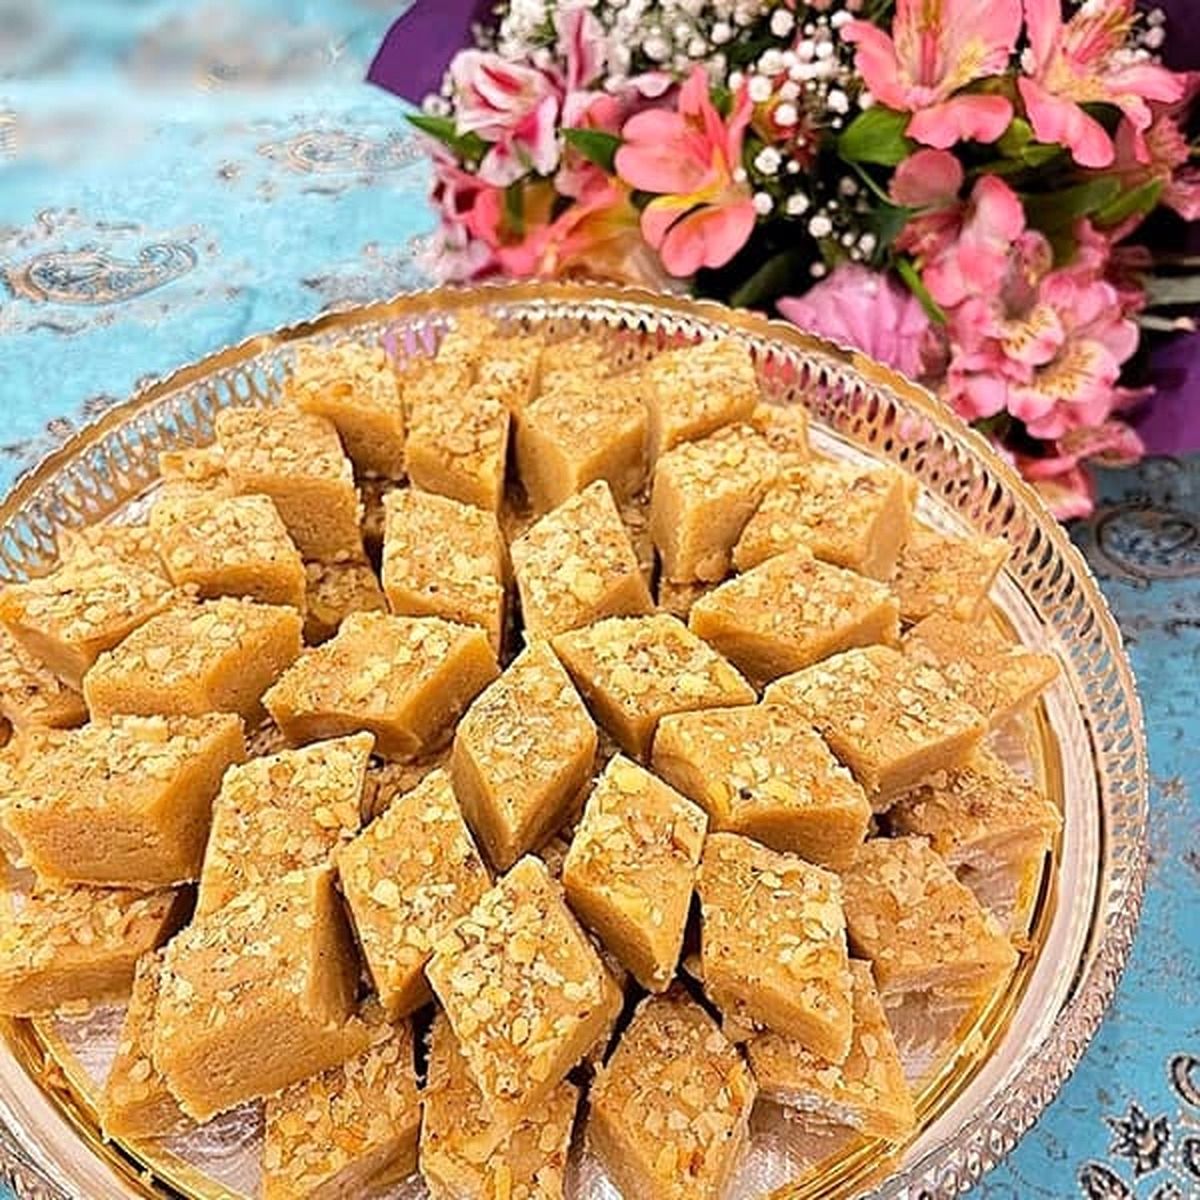 آموزش تهیه حلوا خشک گردویی، یک شیرینی خوشمزه برای عید نوروز و ماه رمضان